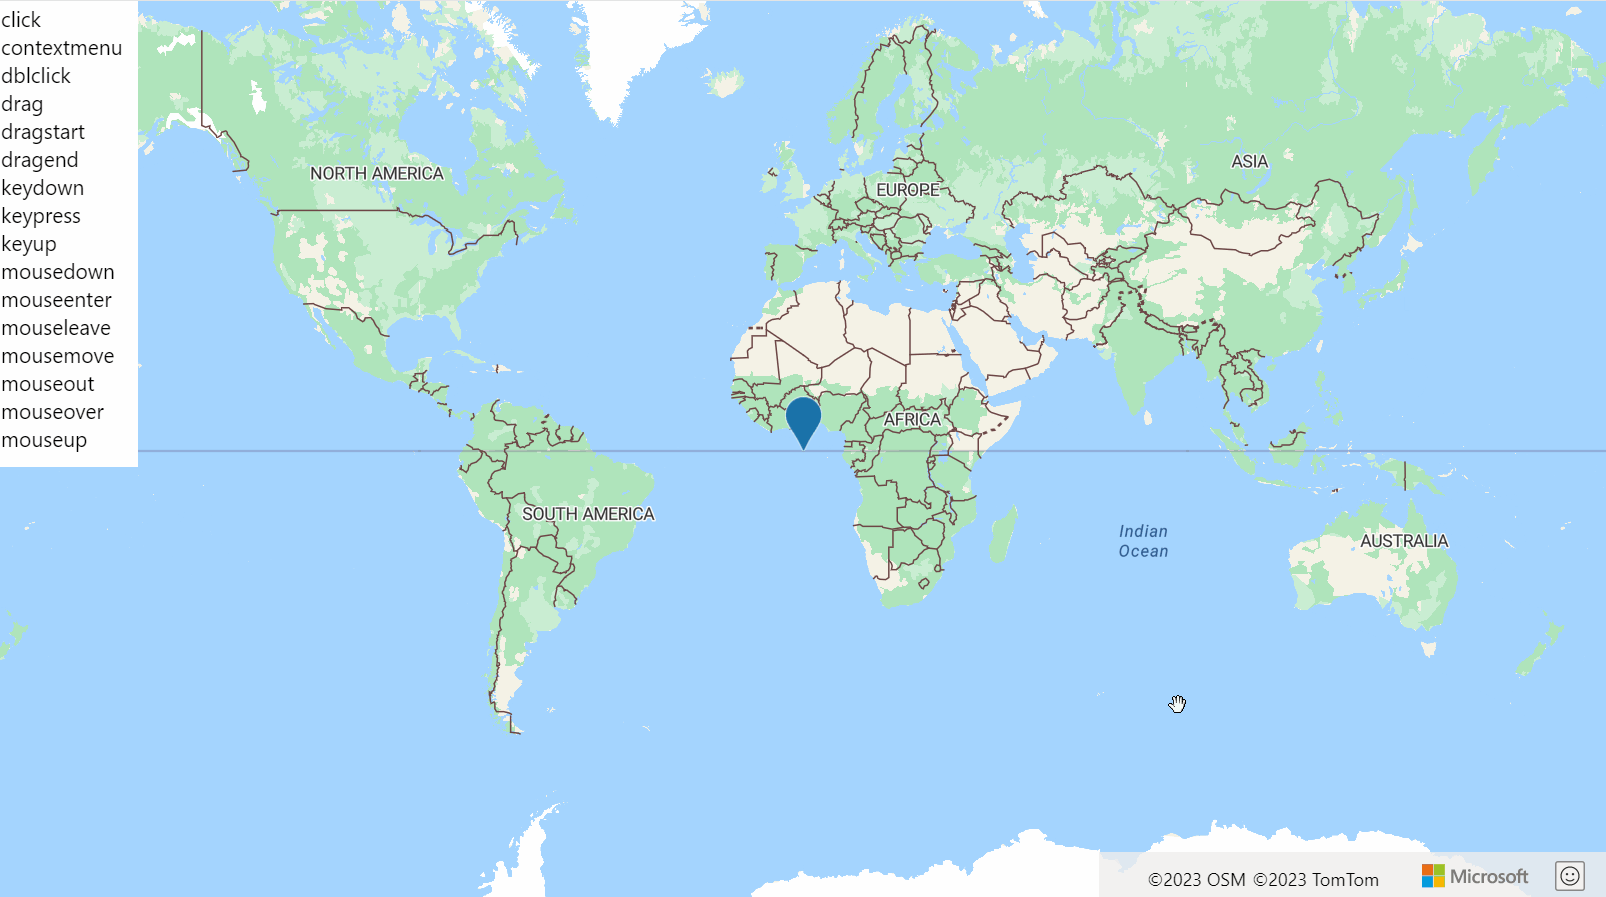 Képernyőkép a világ térképéről egy HtmlMarkerrel és a HtmlMarker-események listájával, amelyek zöld színnel jelennek meg, amikor az esemény kigyullad.